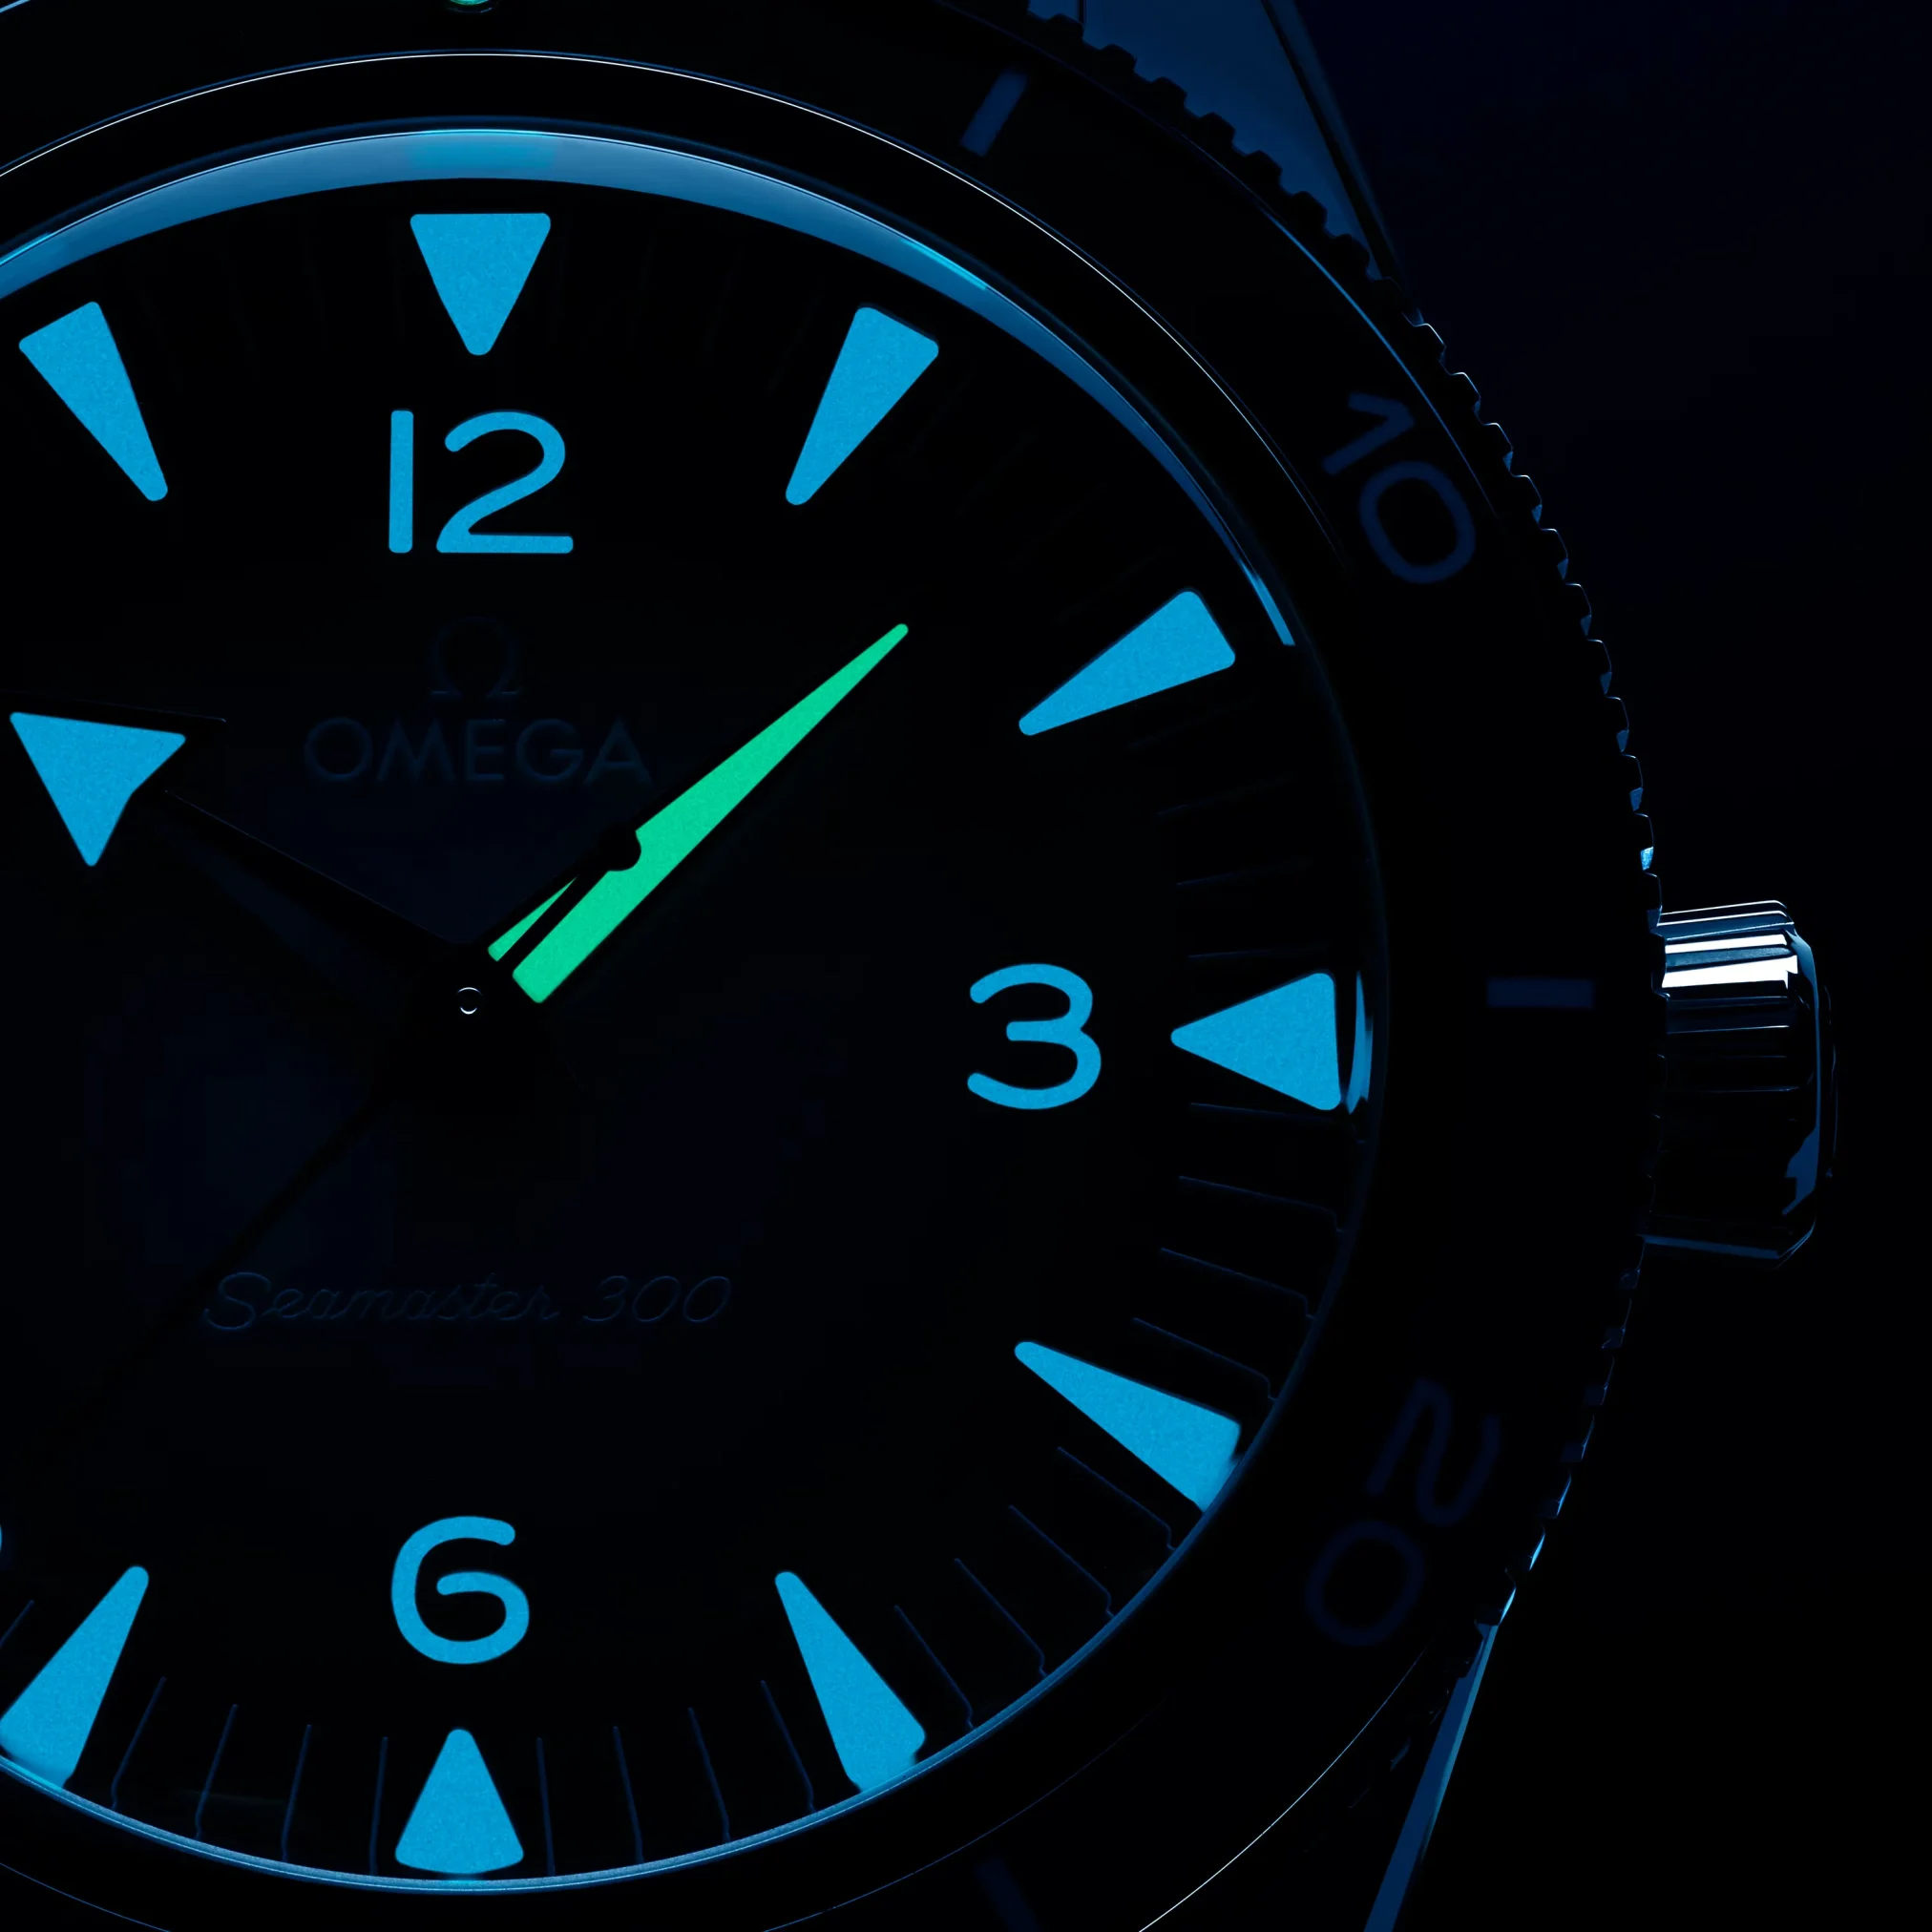 Đồng hồ Omega Seamaster 300M Summer Blue 234.30.41.21.03.002 mặt số màu xanh. Dây đeo bằng thép. Thân vỏ bằng thép.